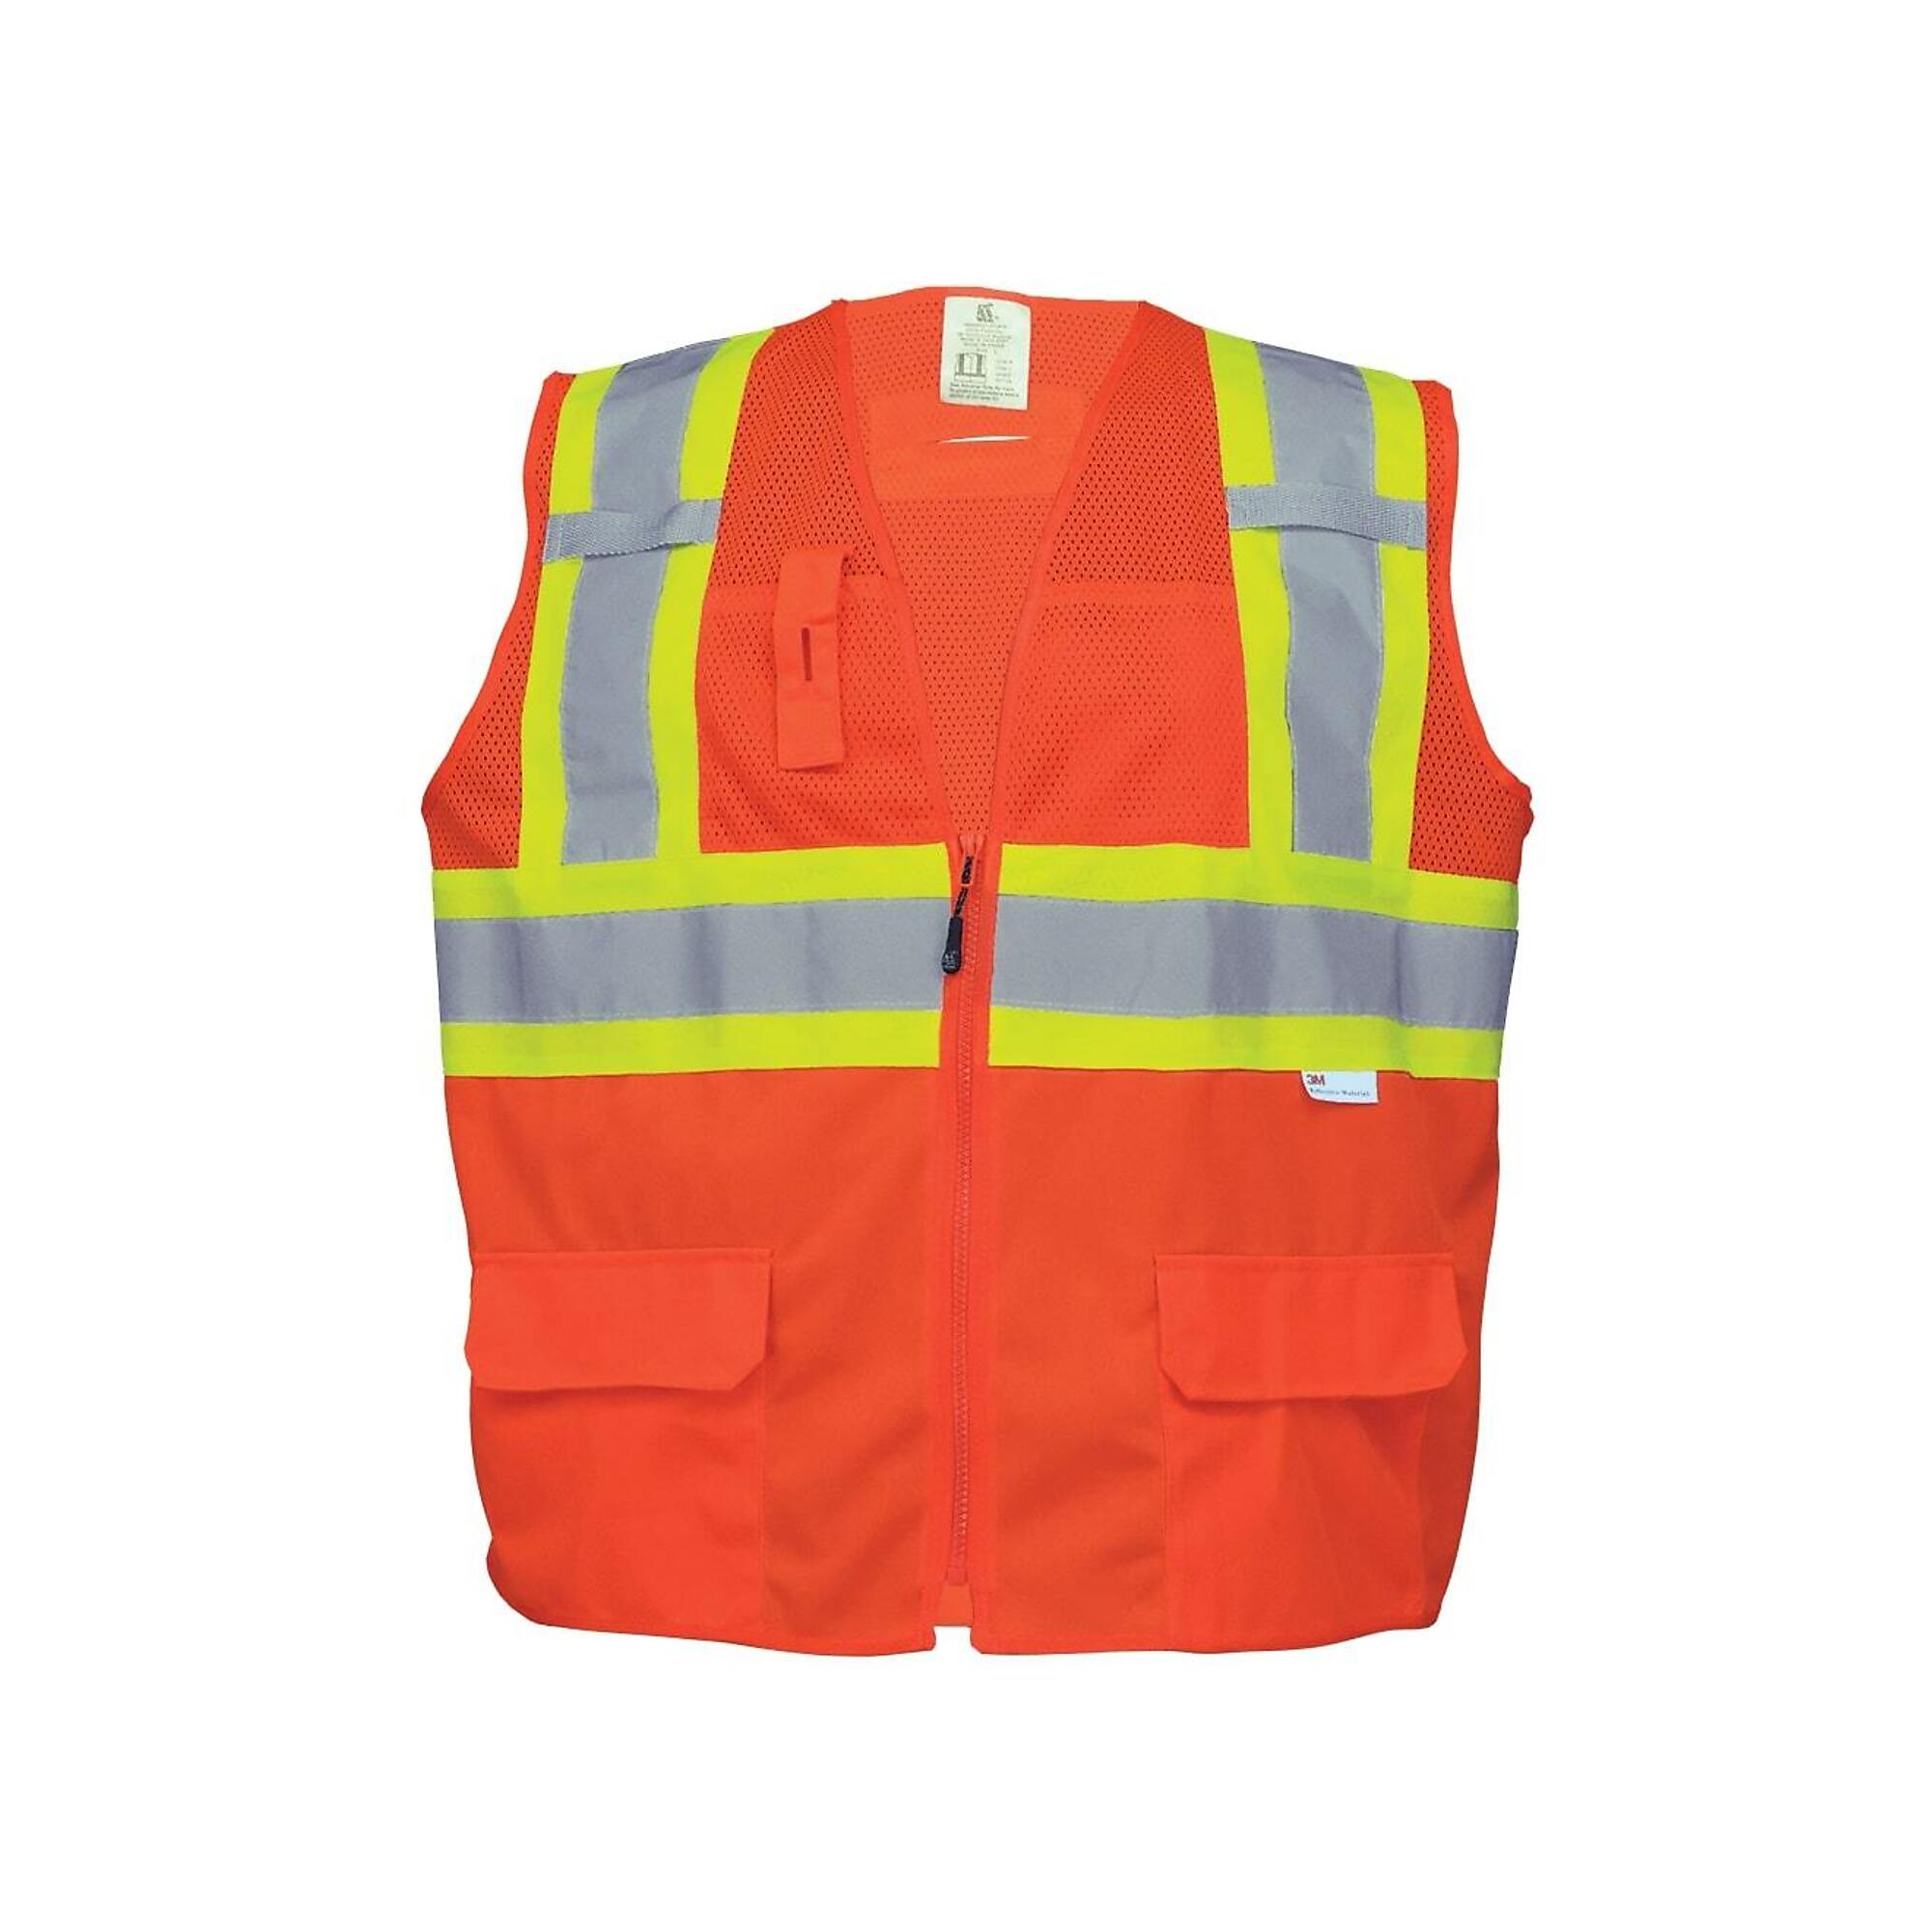 FrogWear, HV Orange, Class 2 6 Pocket, Solid/Mesh Vest, Size M, Color High-Visibility Orange, Model GLO-0047-M